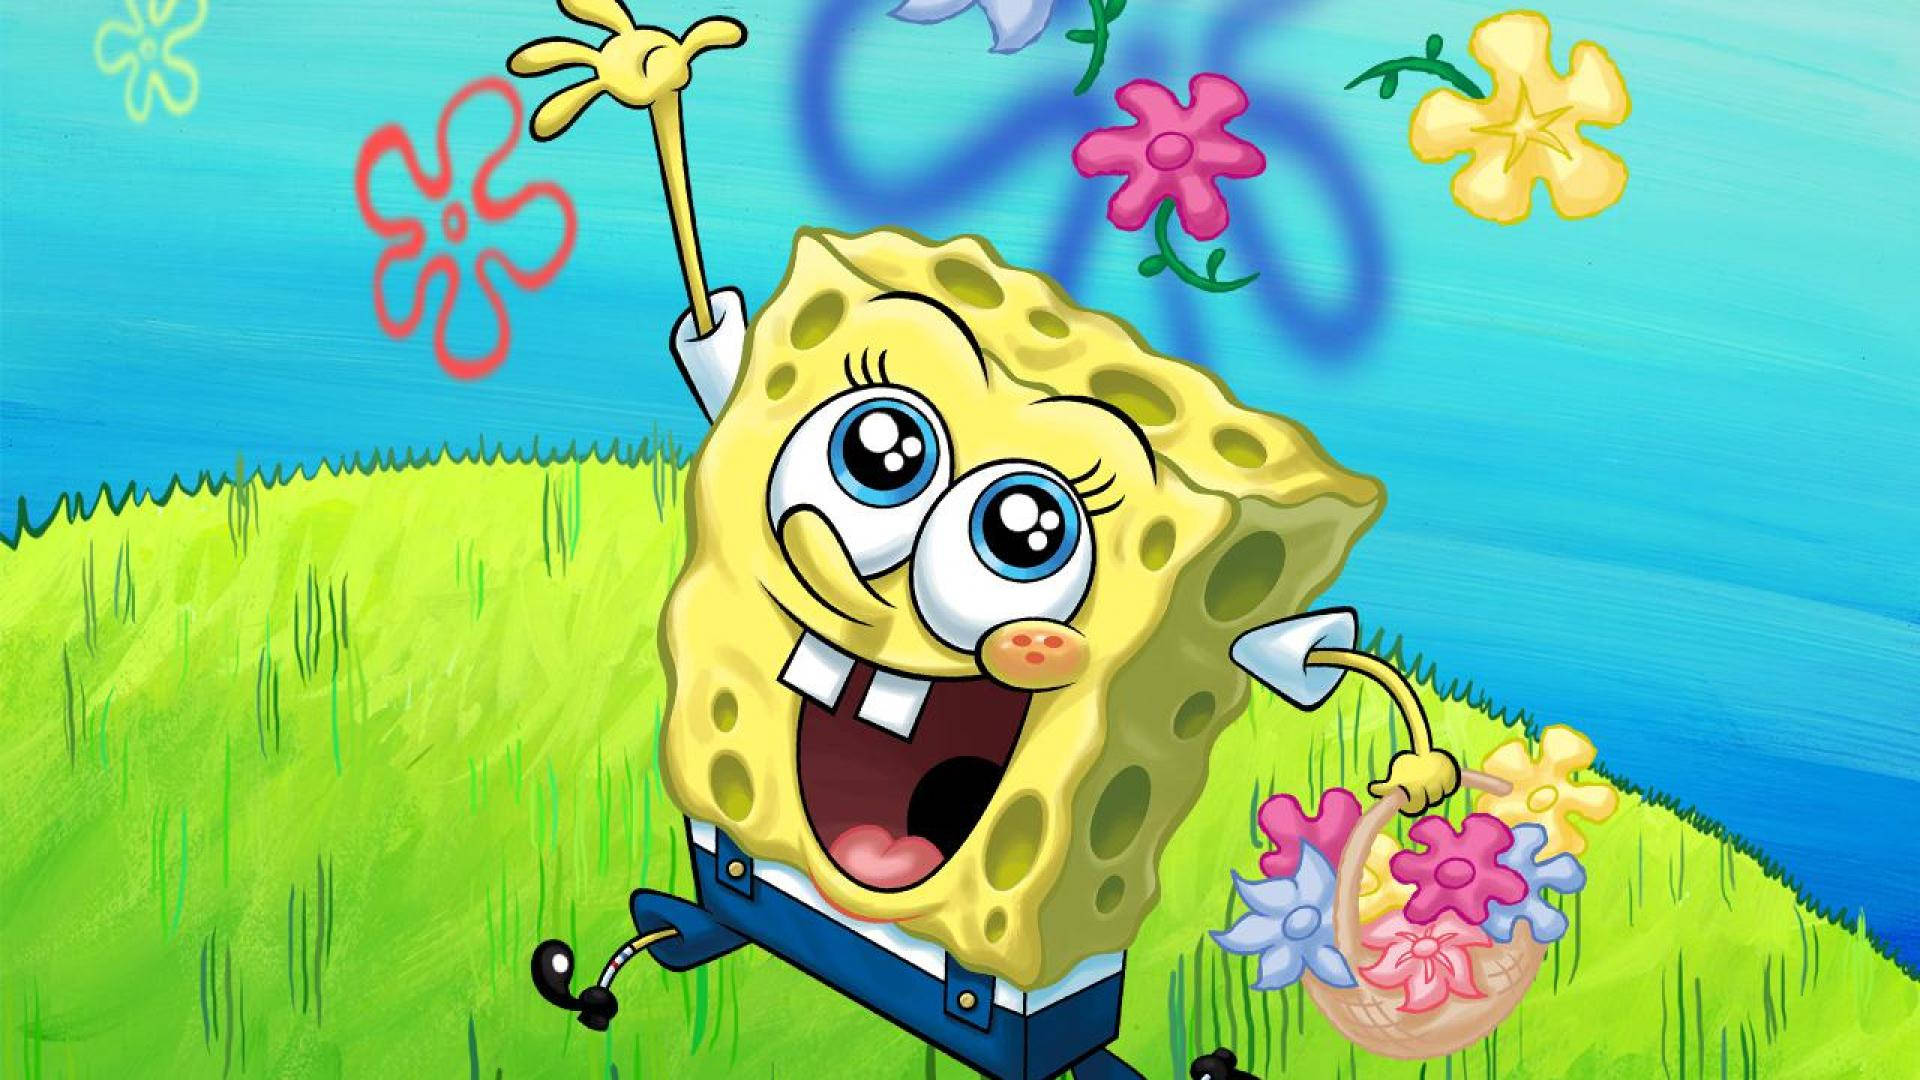 Spongebob Is Always Smiling! Wallpaper